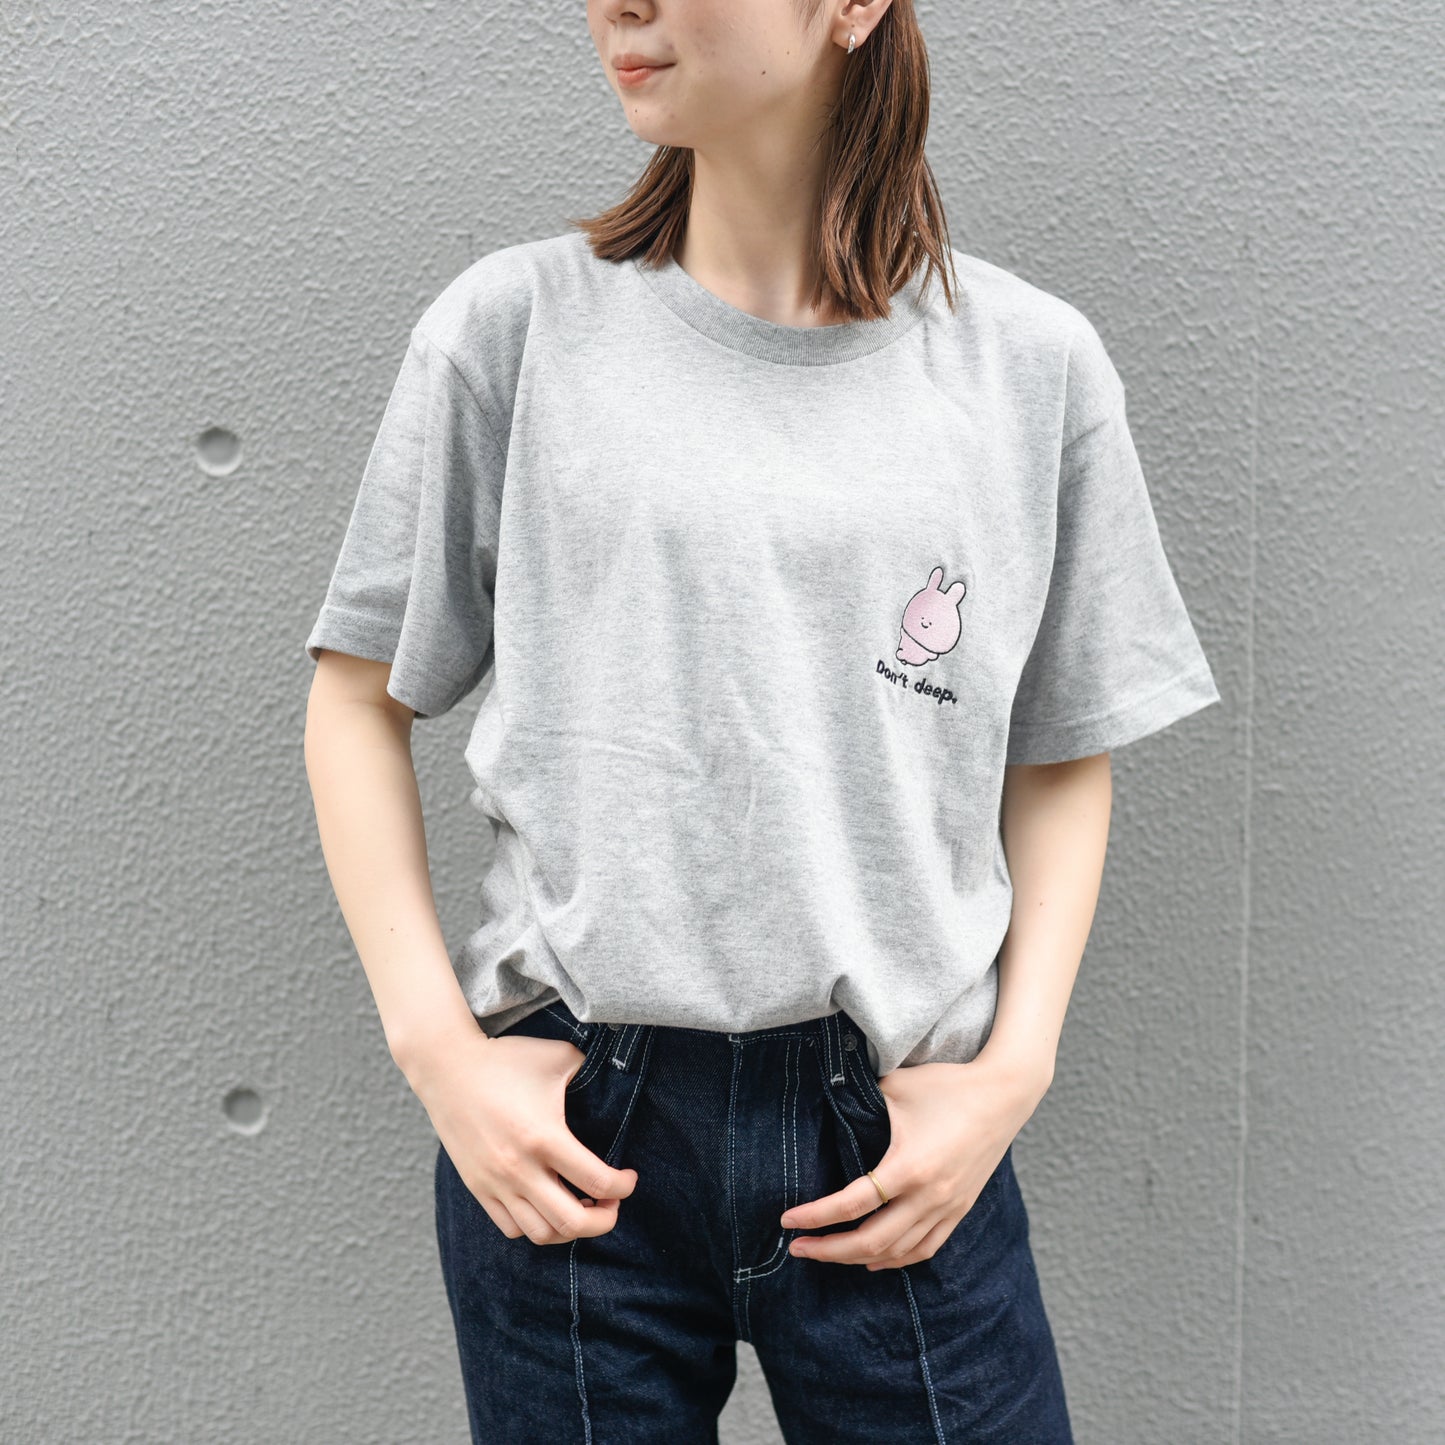 [Asamimi-chan] T-shirt ricamata a maniche corte (non profonda) [Su ordinazione]